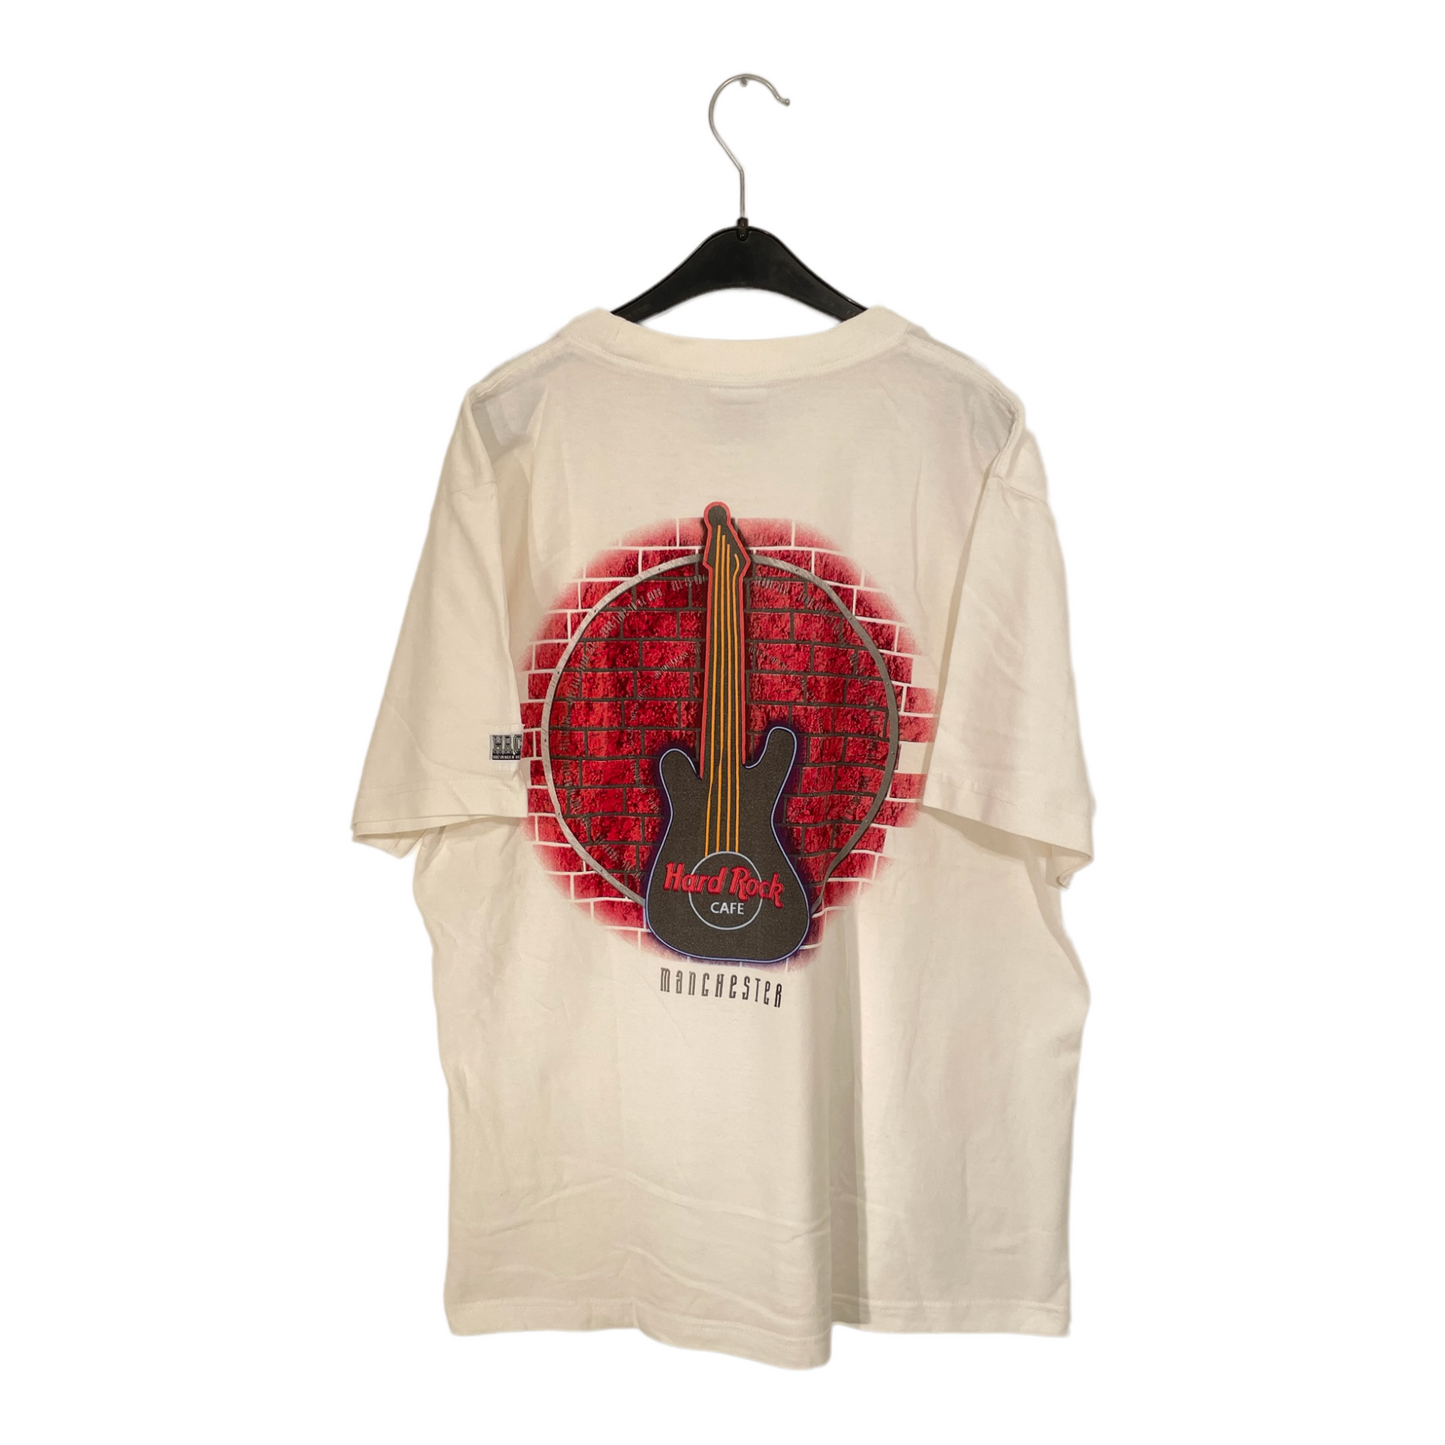 Hard Rock Manchester T-Shirt